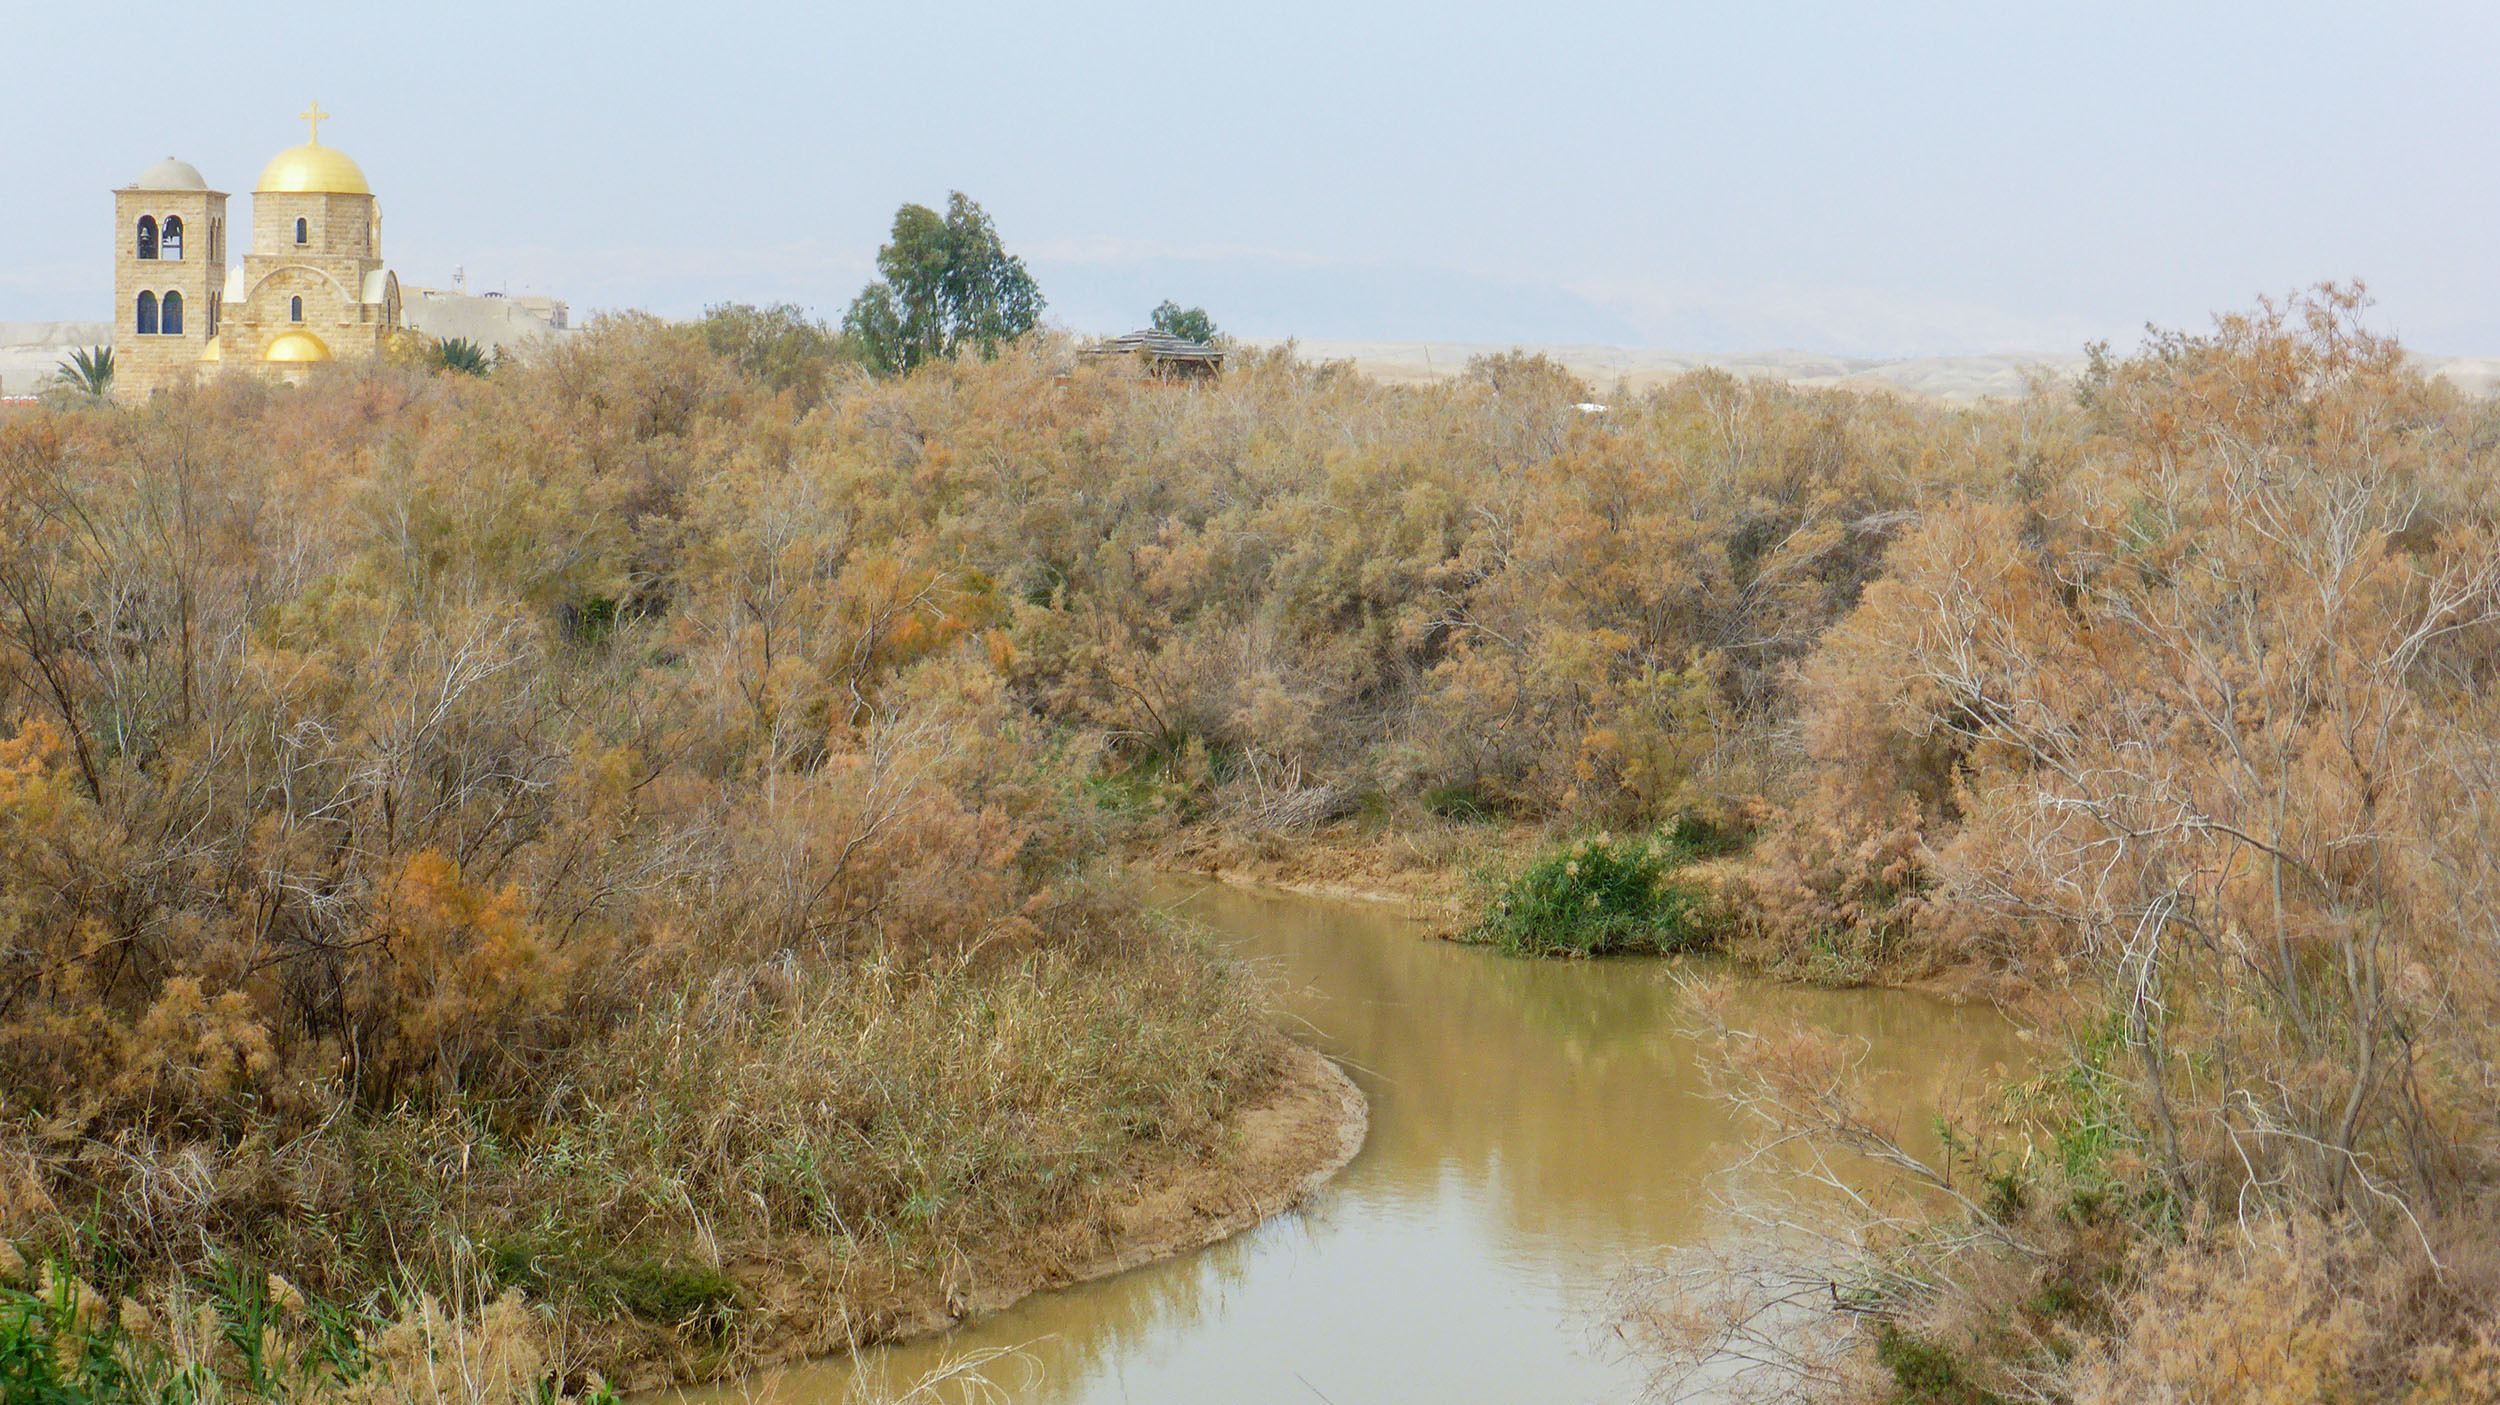 River at Bethany Beyond the Jordan in Jordan